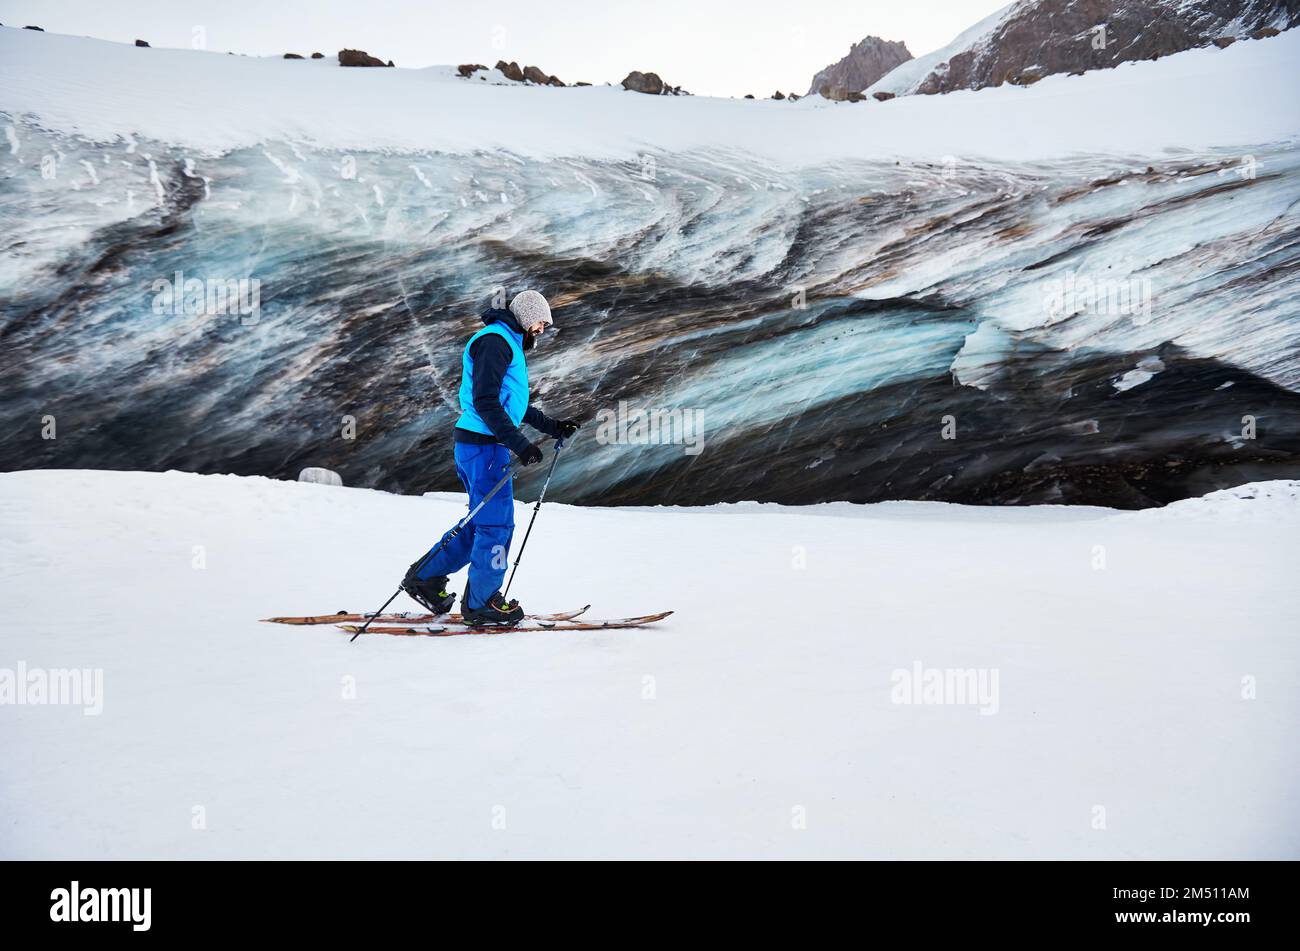 Skieur homme ski de randonnée à la station de ski de montagne haute neige de Shymbulak près de la paroi de la grotte de glace. Sport en plein air dans l'arrière-pays en hiver. Banque D'Images